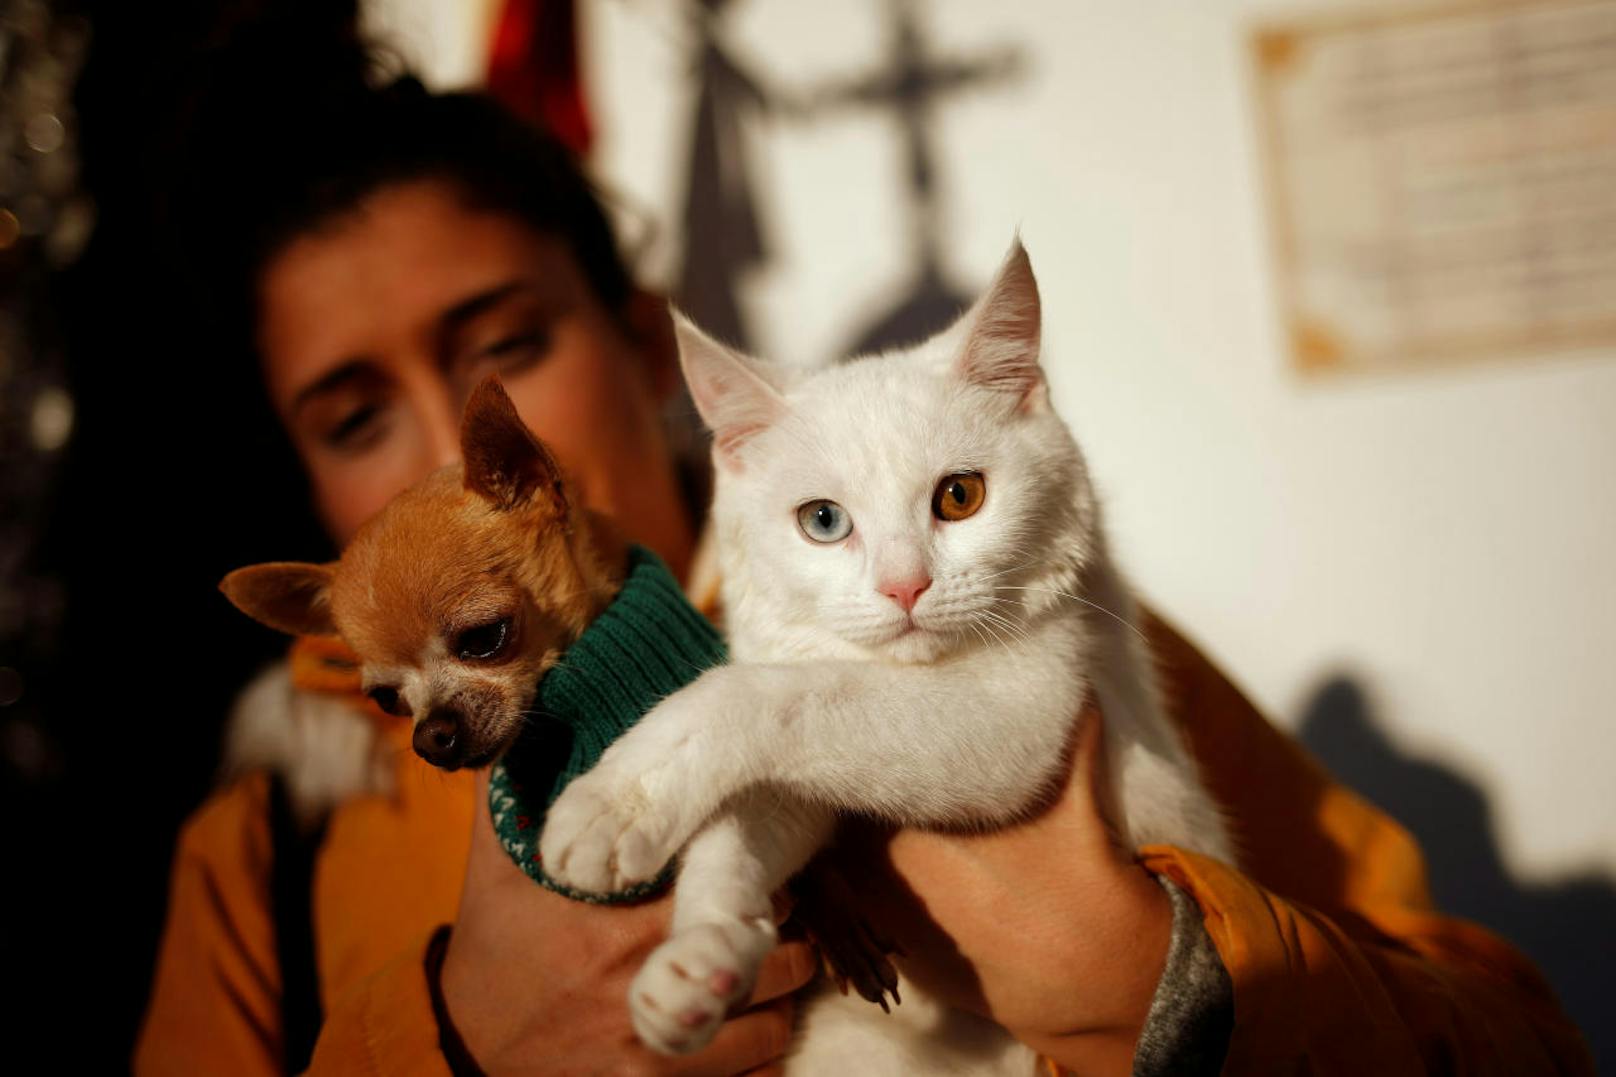 Ebenfalls in Spanien werden jedes Jahr am 17. Jänner Katzen und Hunde von Priestern zu Ehren des Heiligen Antonius gesegnet.